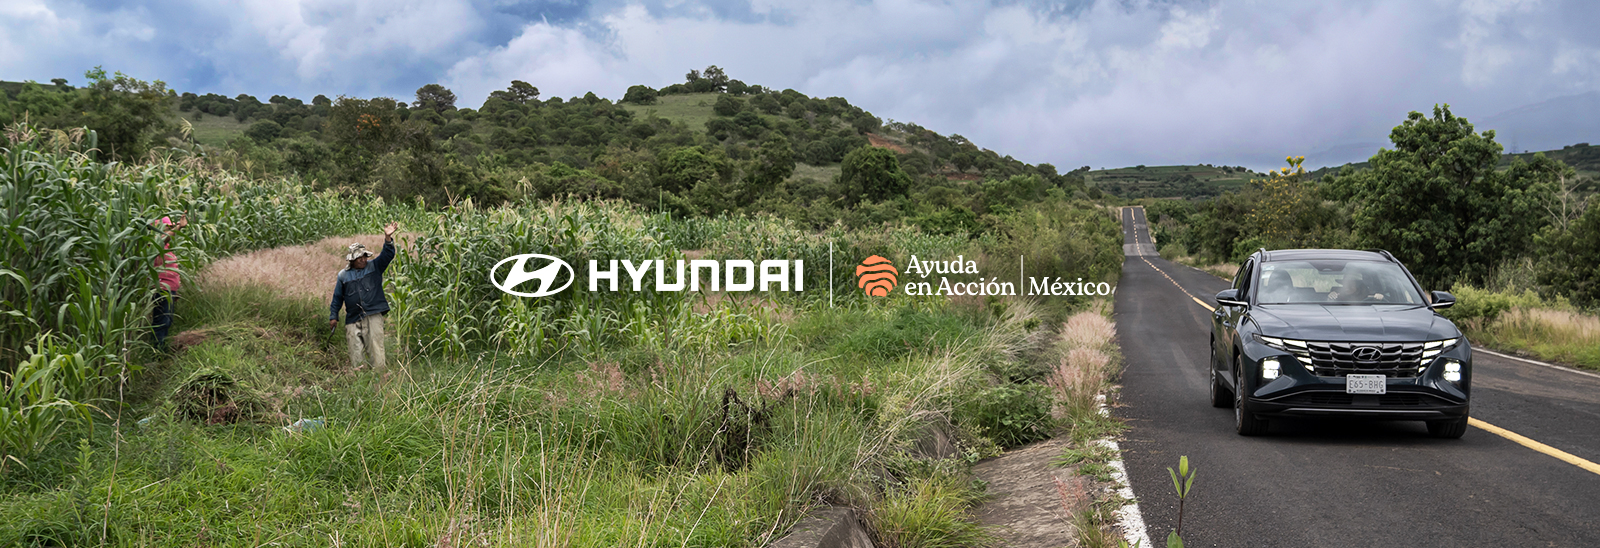 Hyundai y Ayuda en Acción